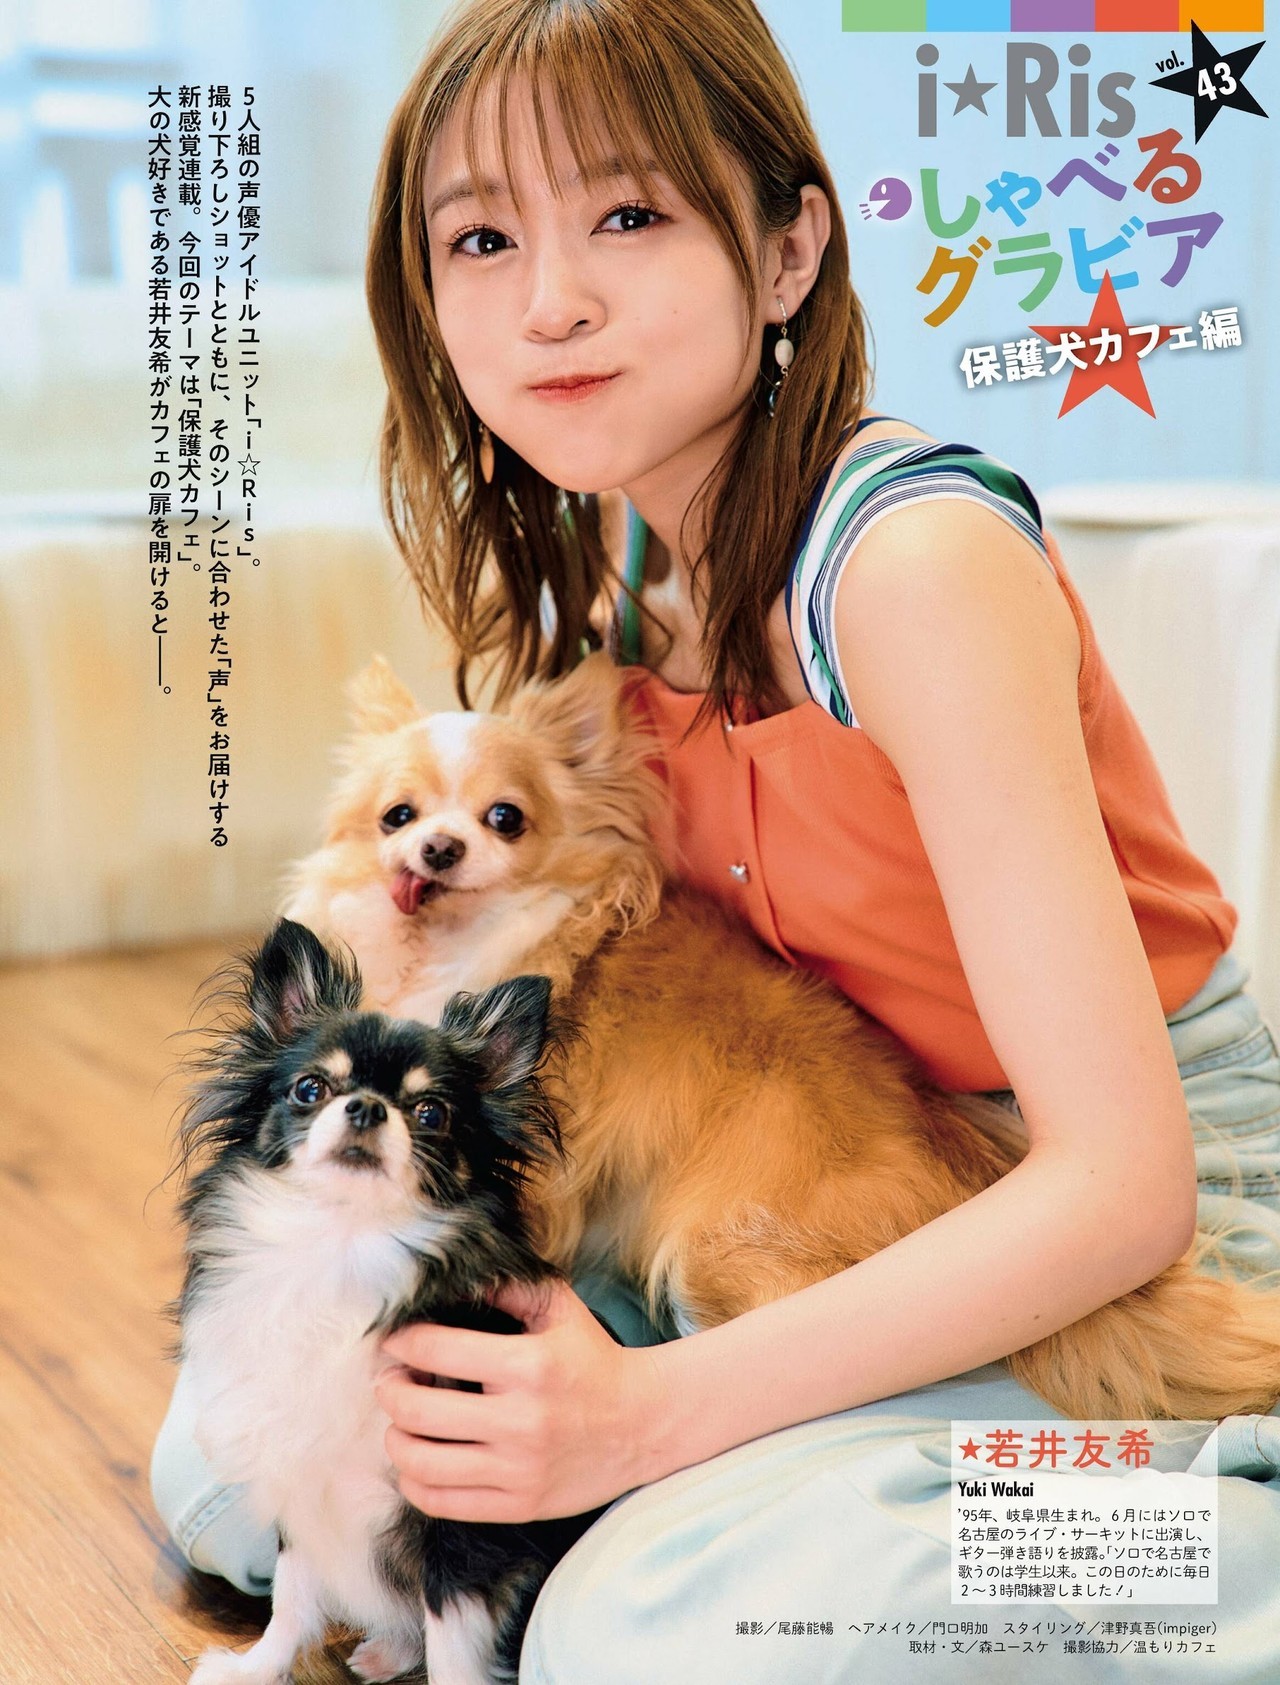 I☆RIS, Weekly SPA! 2022.07.05 (週刊SPA! 2022年7月5日号) - itotii